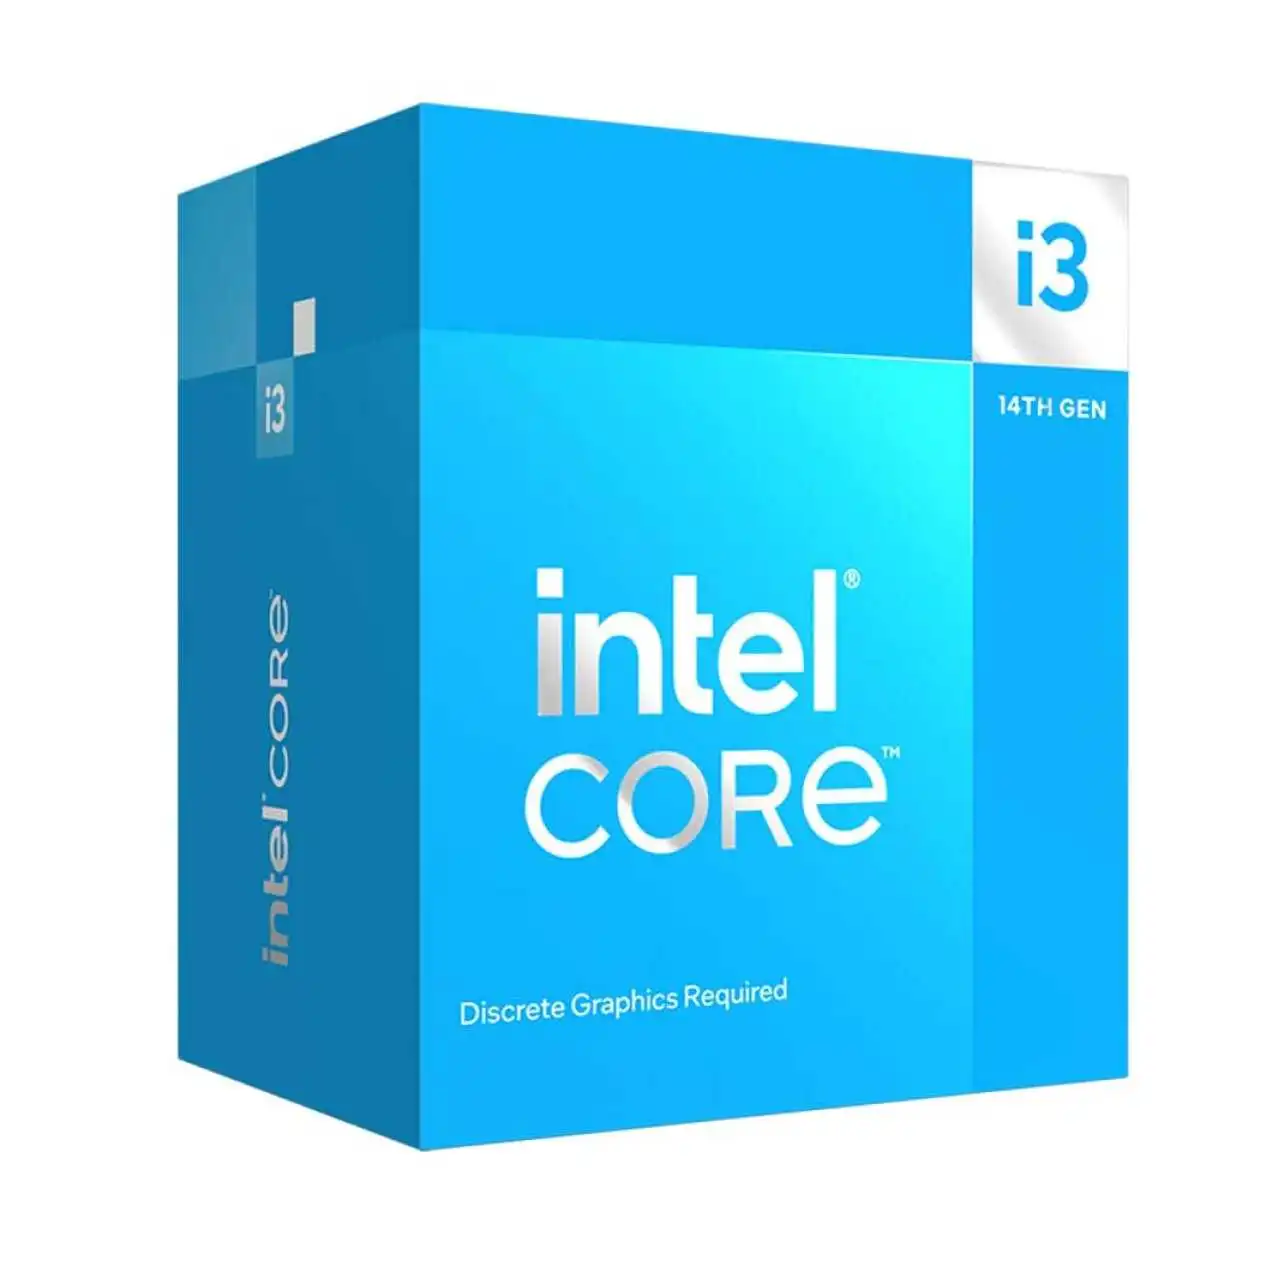 Intel-core-3-14100f-3-50ghz-12mb-1700p-14-nesIl-ürün-resmi-thumbnail